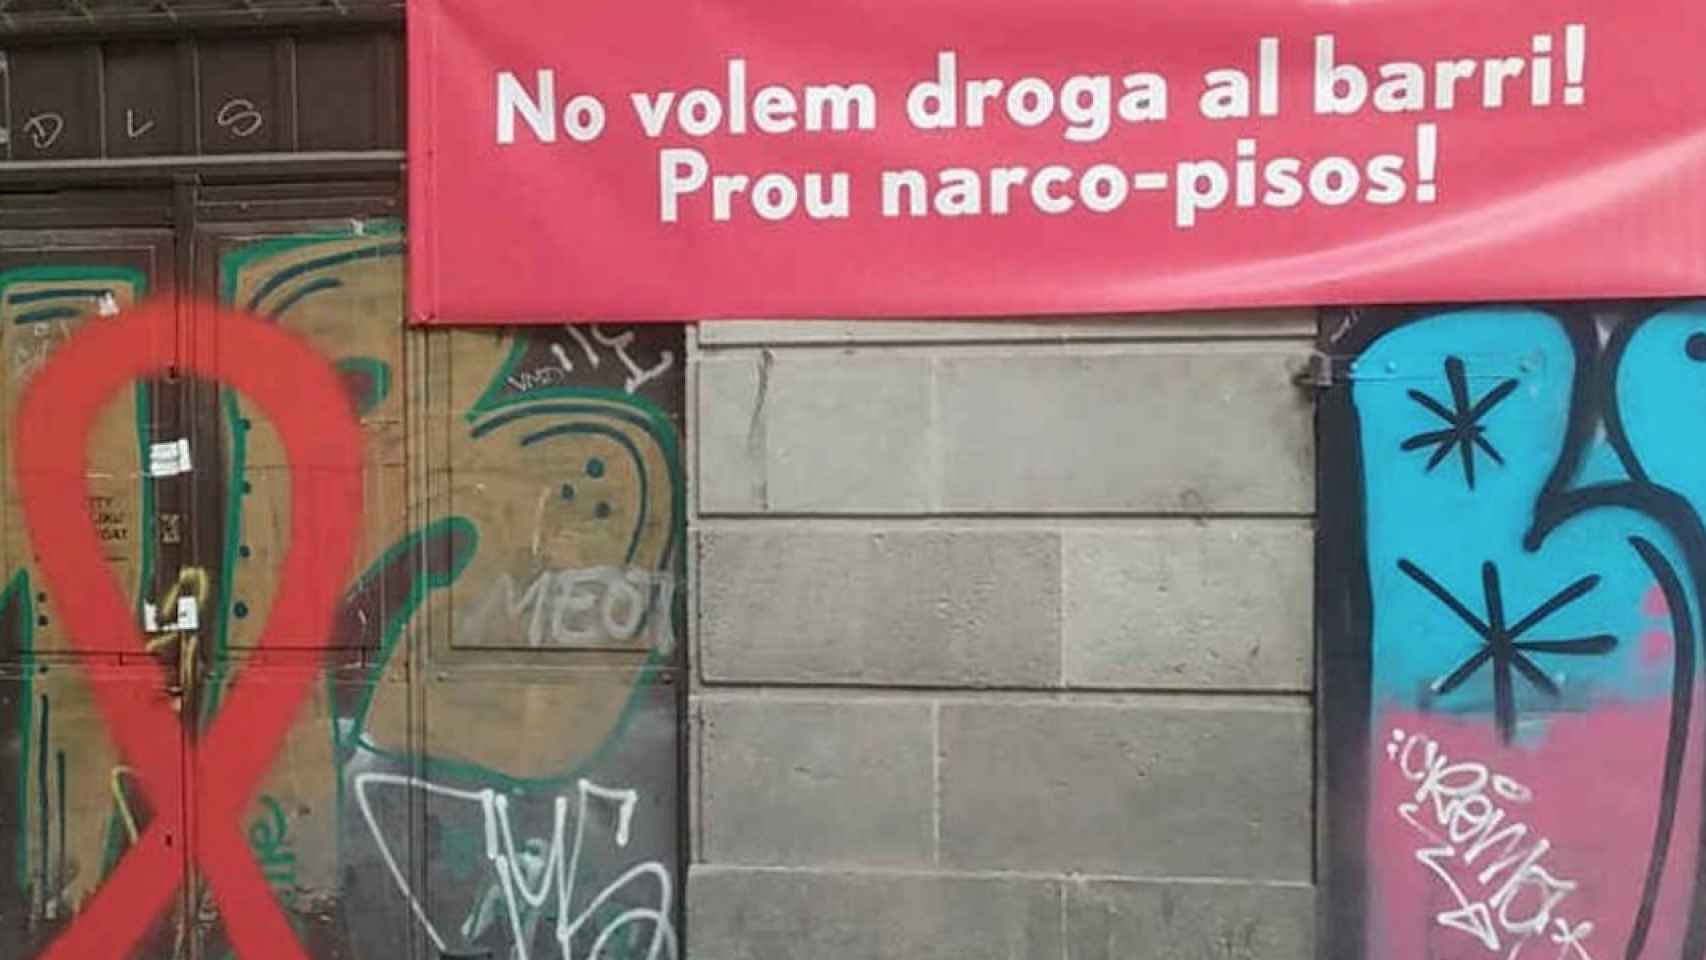 Una imagen de una pancarta de protesta contra la droga en el barrio Gótico / CG